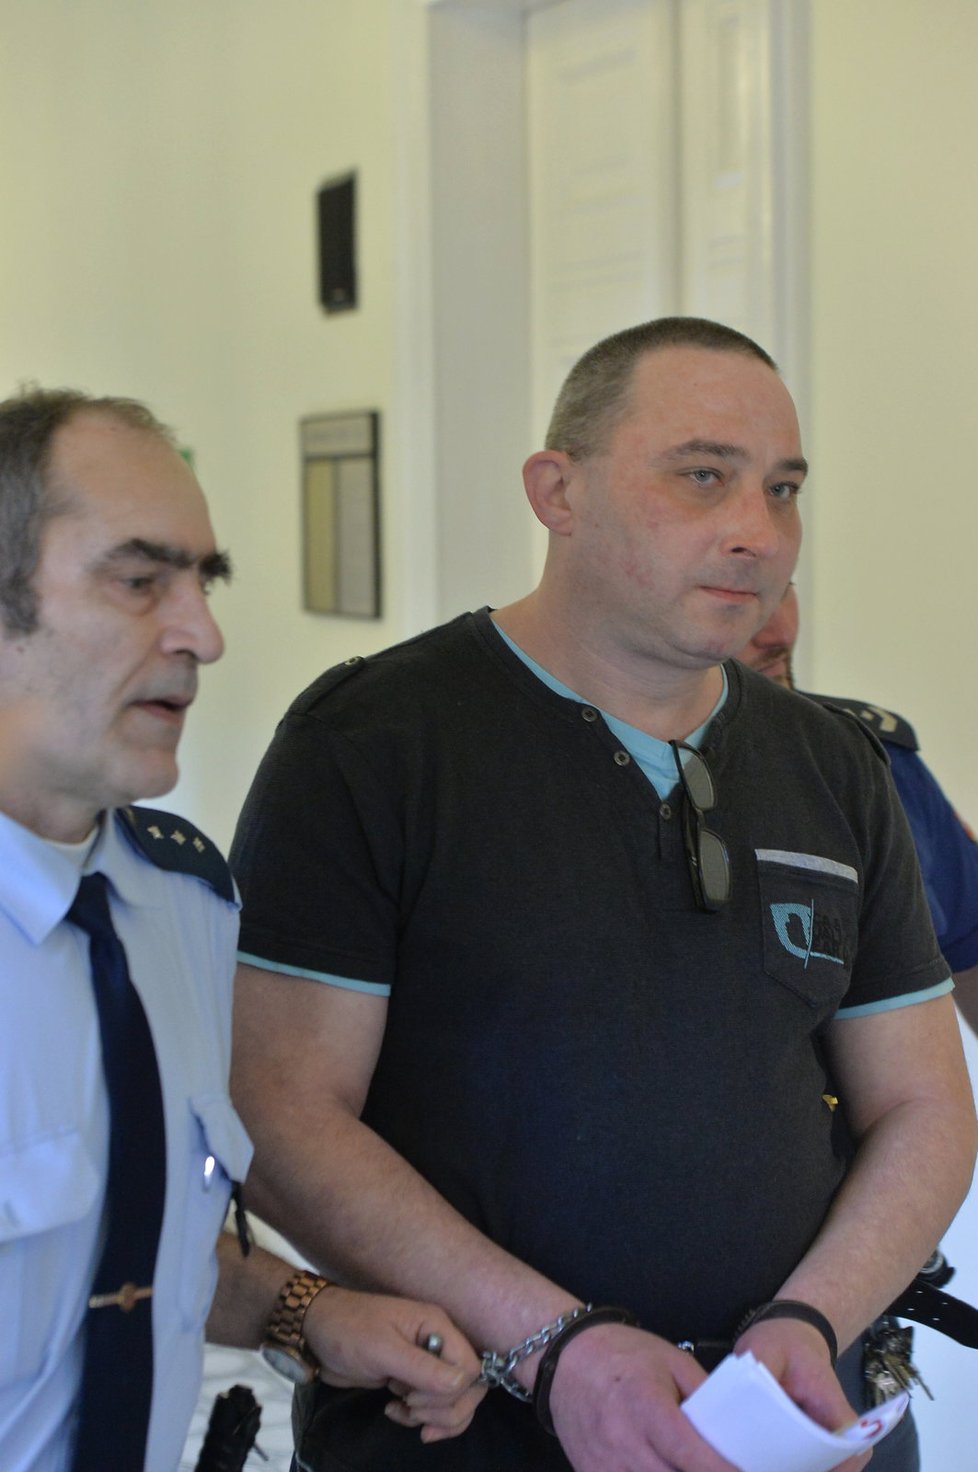 Za zardoušení partnerky v bytě v pražských Vysočanech si Libor Lébl odpyká 14,5 roku vězení.